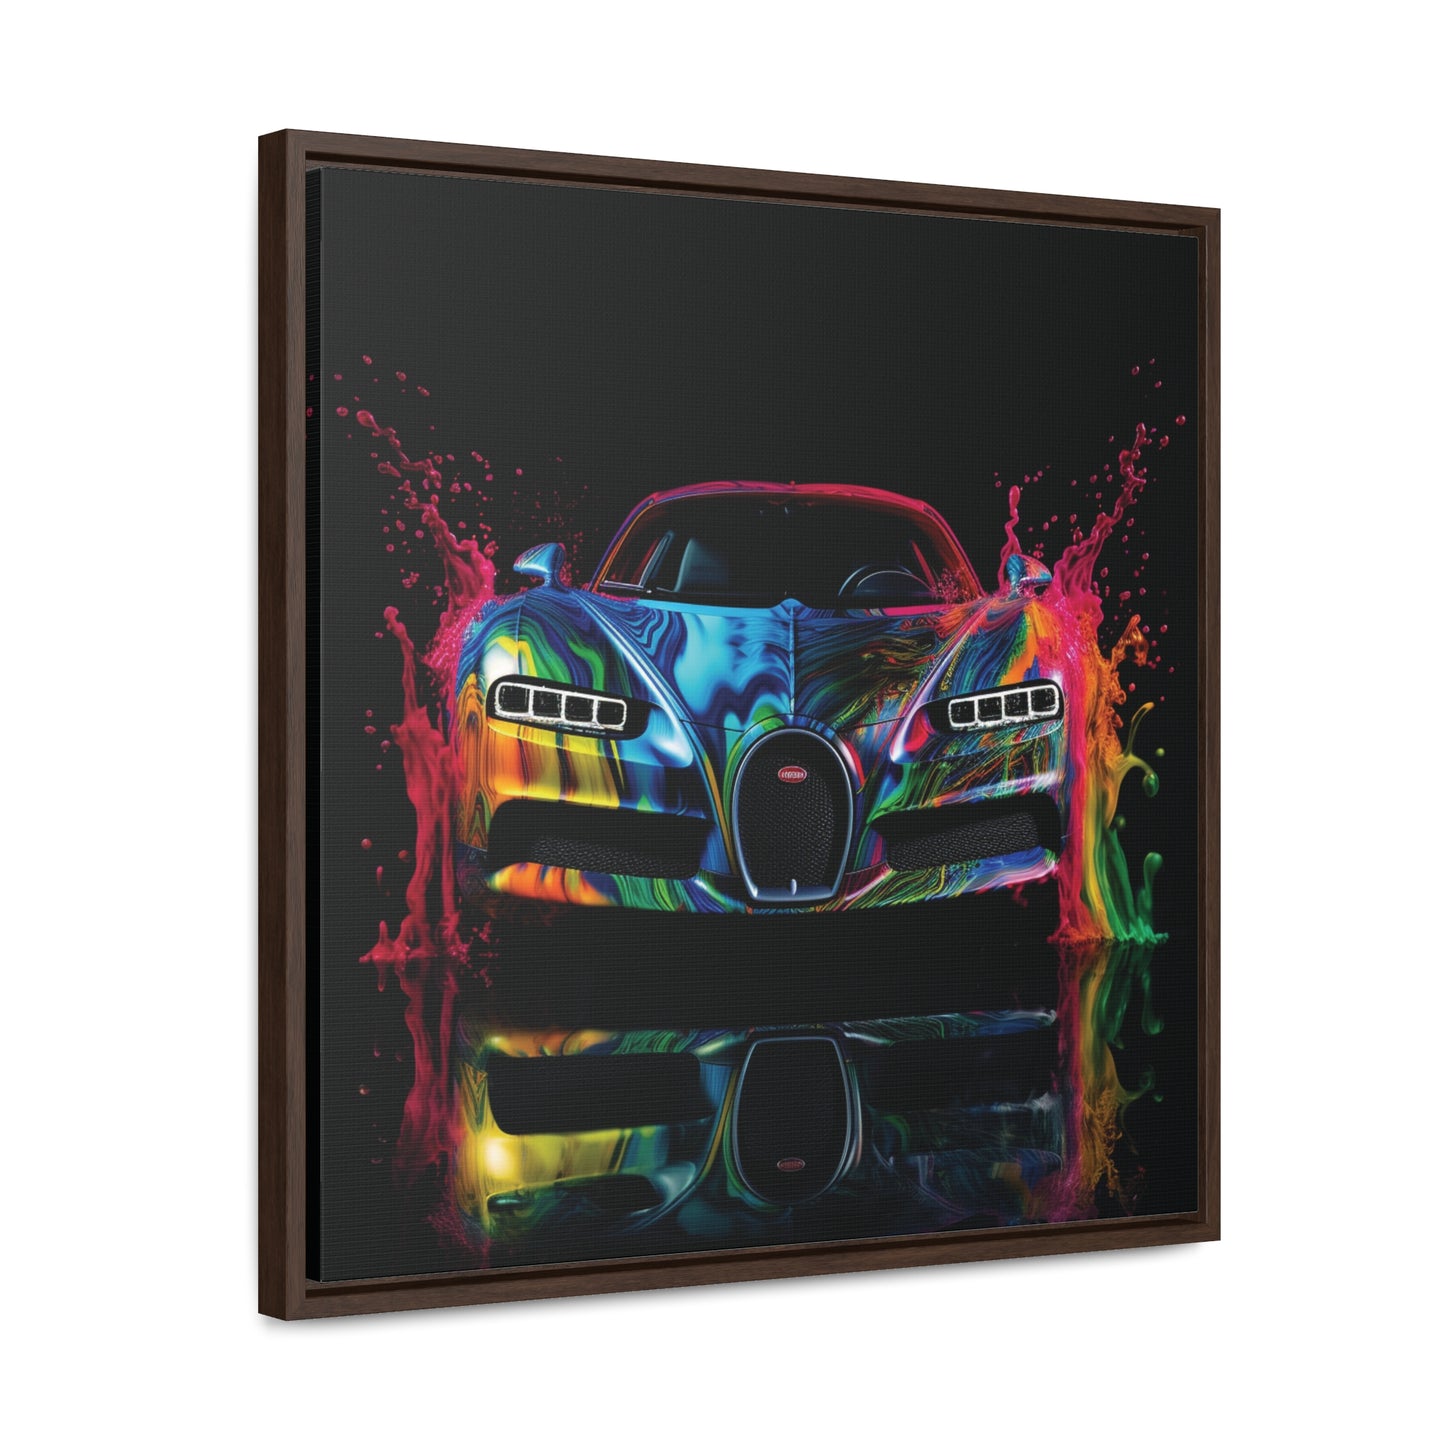 Gallery Canvas Wraps, Square Frame Bugatti Water 4